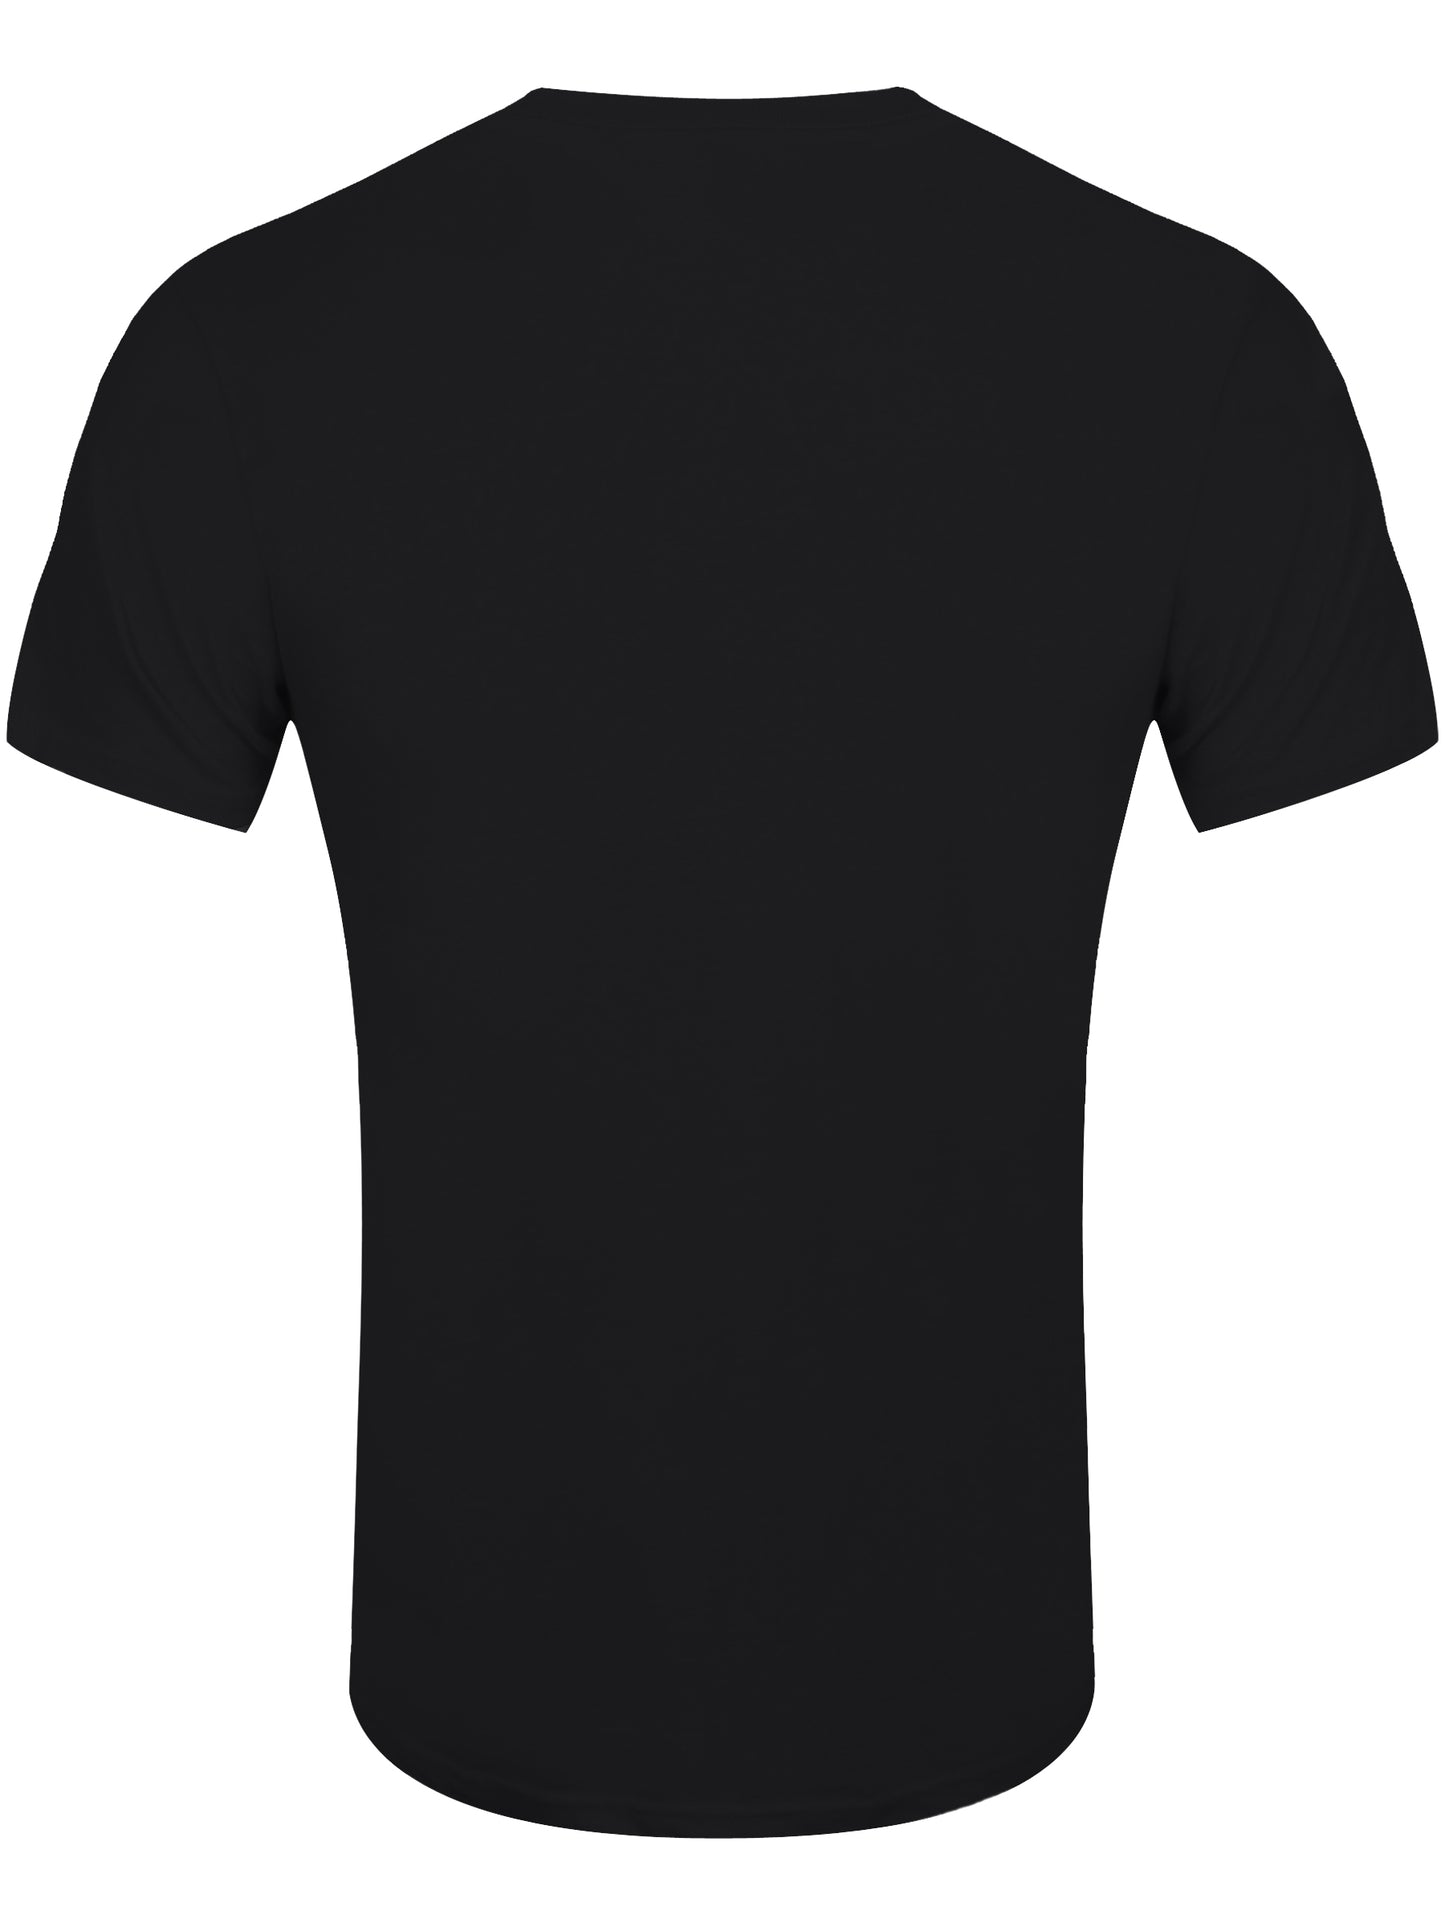 Motley Crue Theatre Of Pain Cry Men's Black T-Shirt